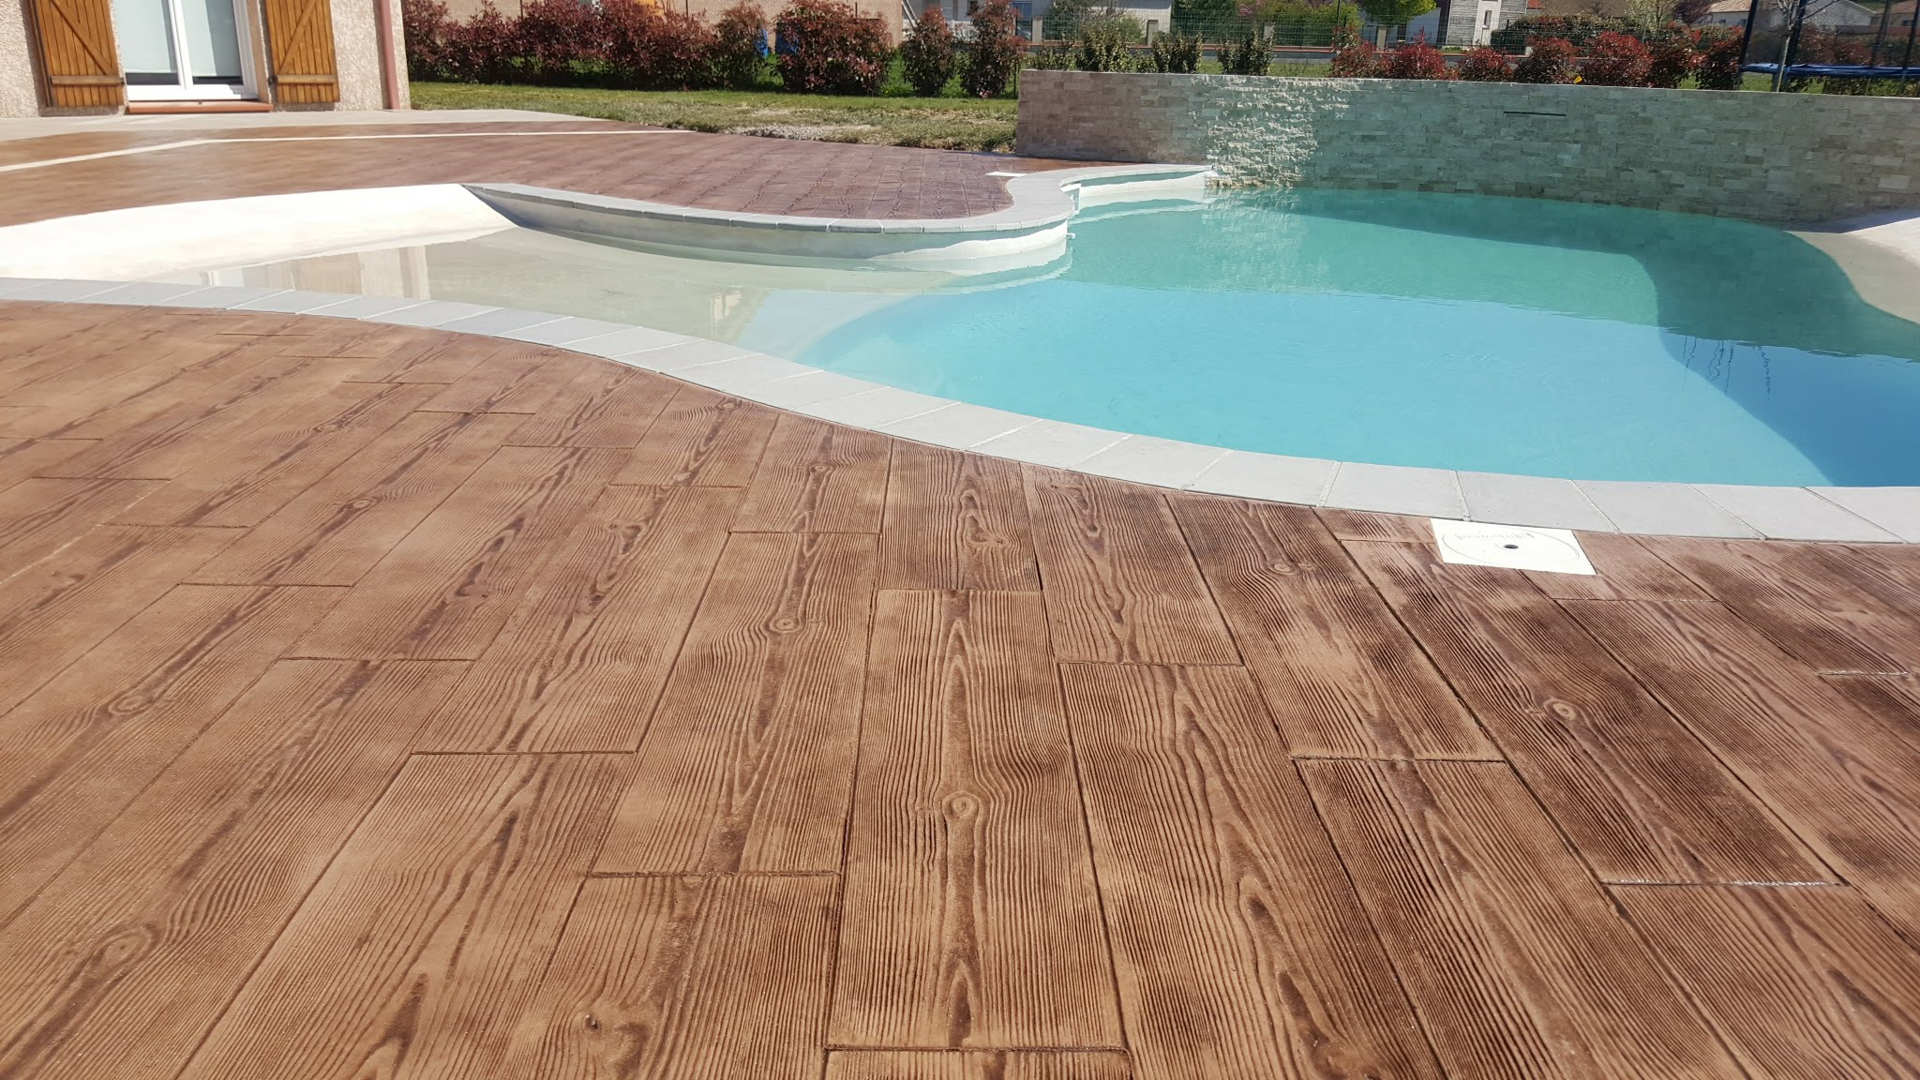 bedrukt houten betonvloer rond zwembad